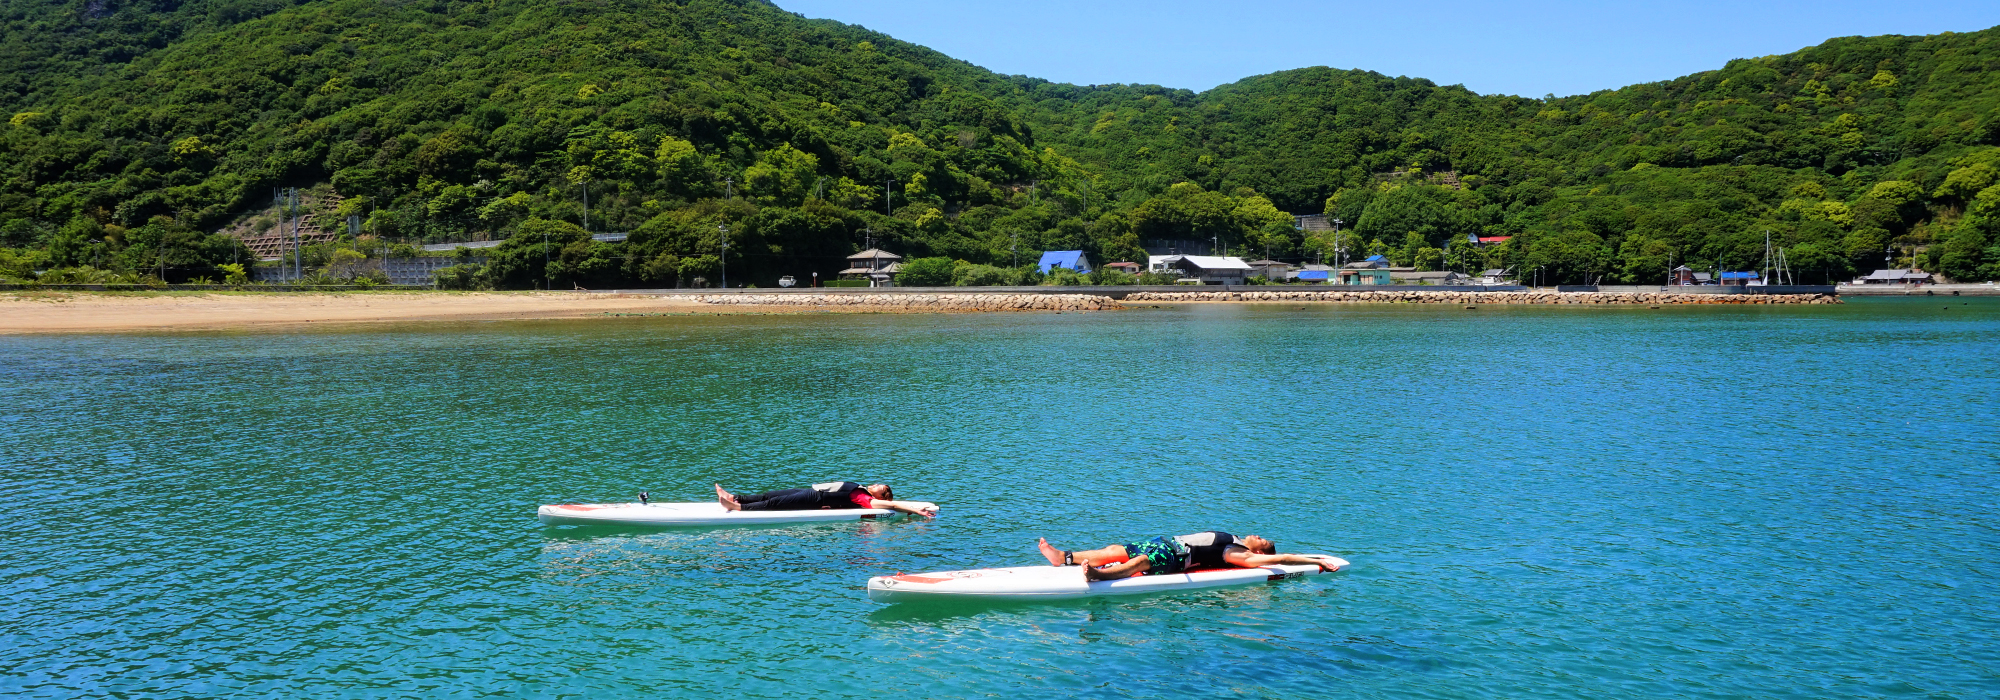 緑の自然も豊かな瀬戸内海の離島・香川県の小豆島の海でSUP体験をしよう。